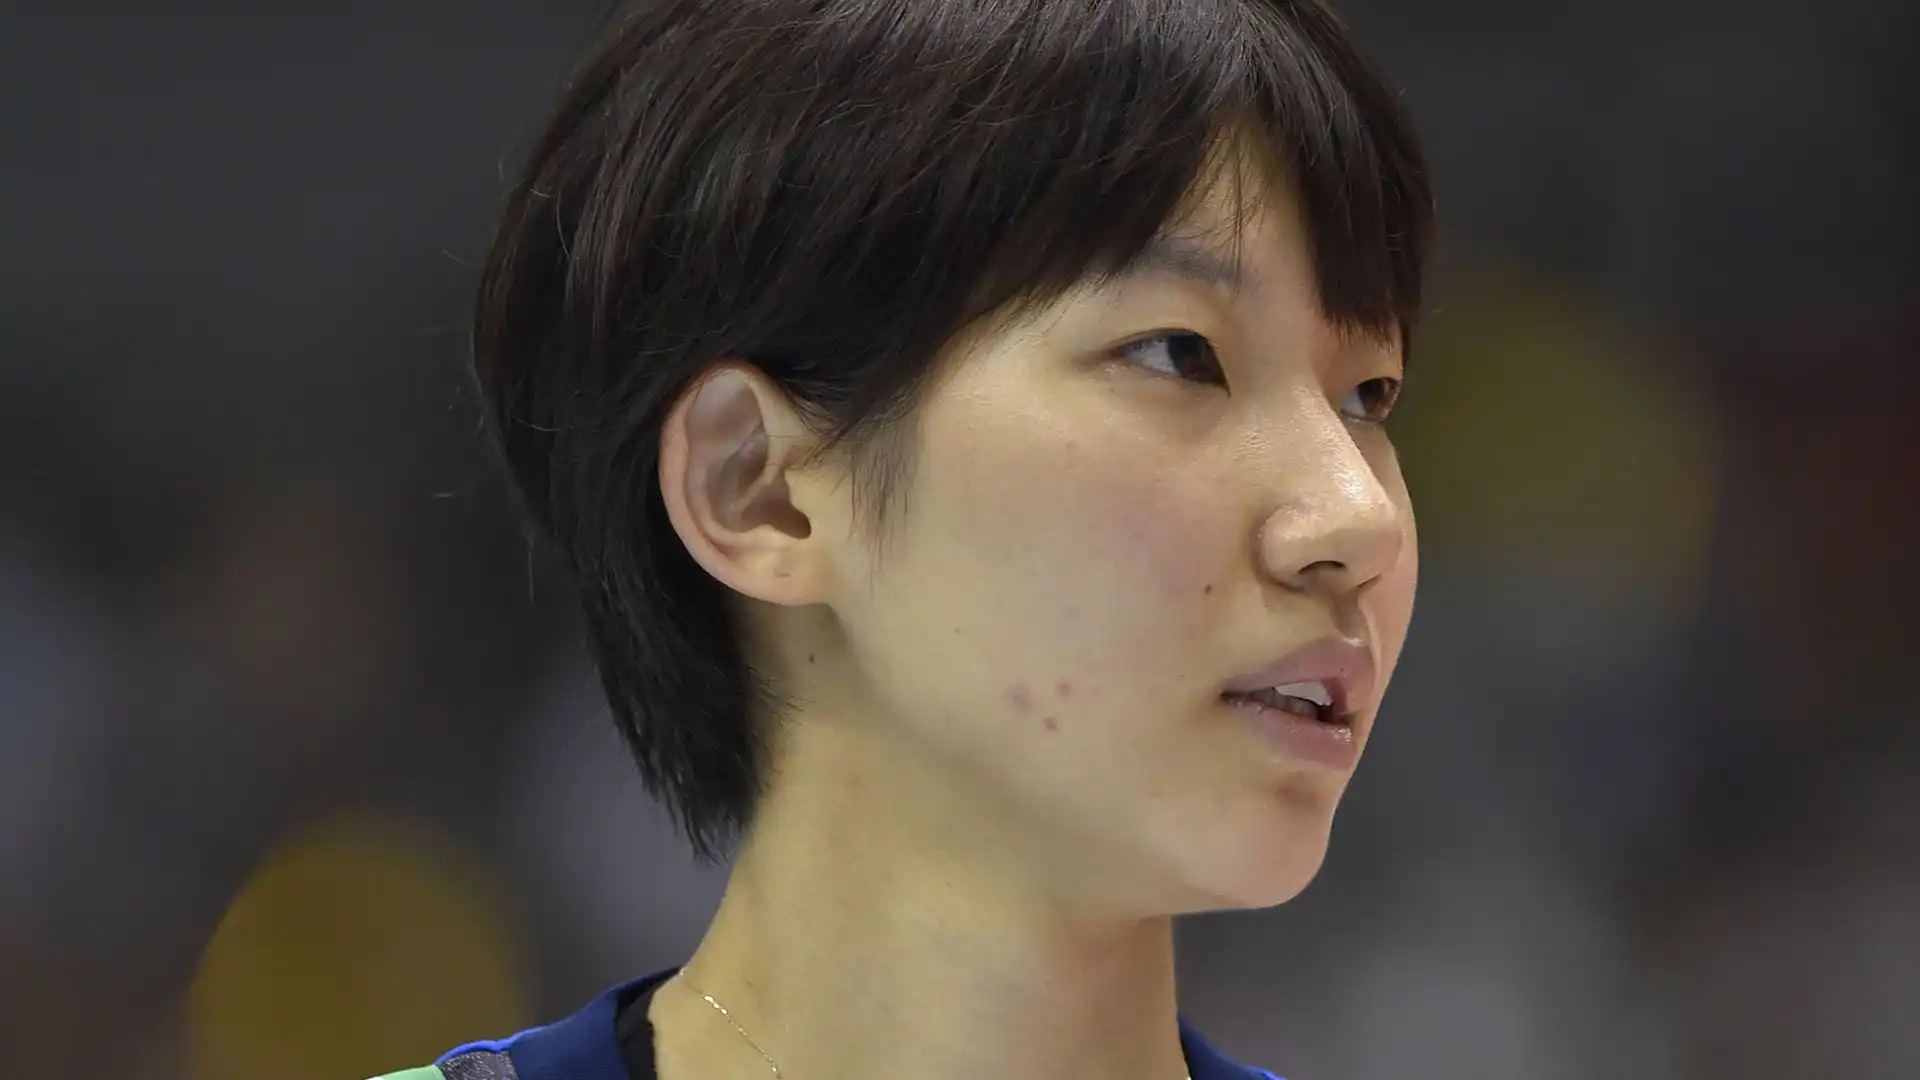 Sarina Koga è una pallavolista giapponese nata il 21 maggio 1996